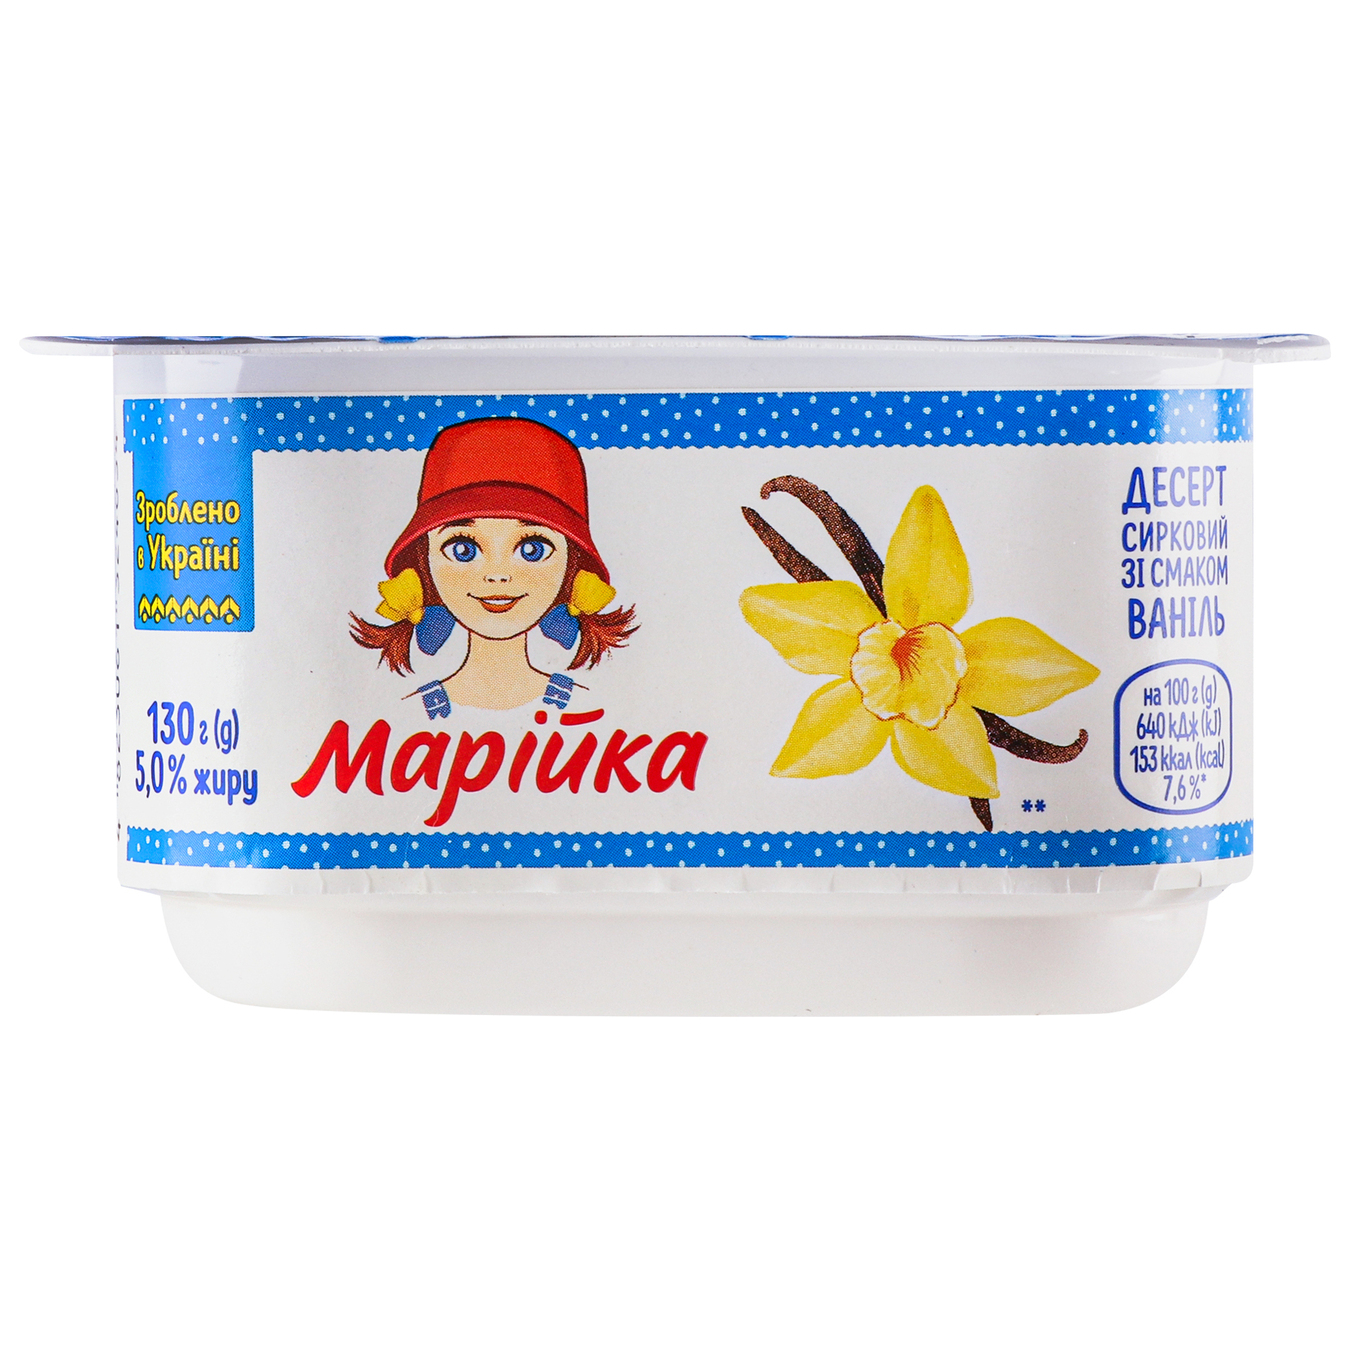 Mariyka cottage cheese dessert 5% 130g